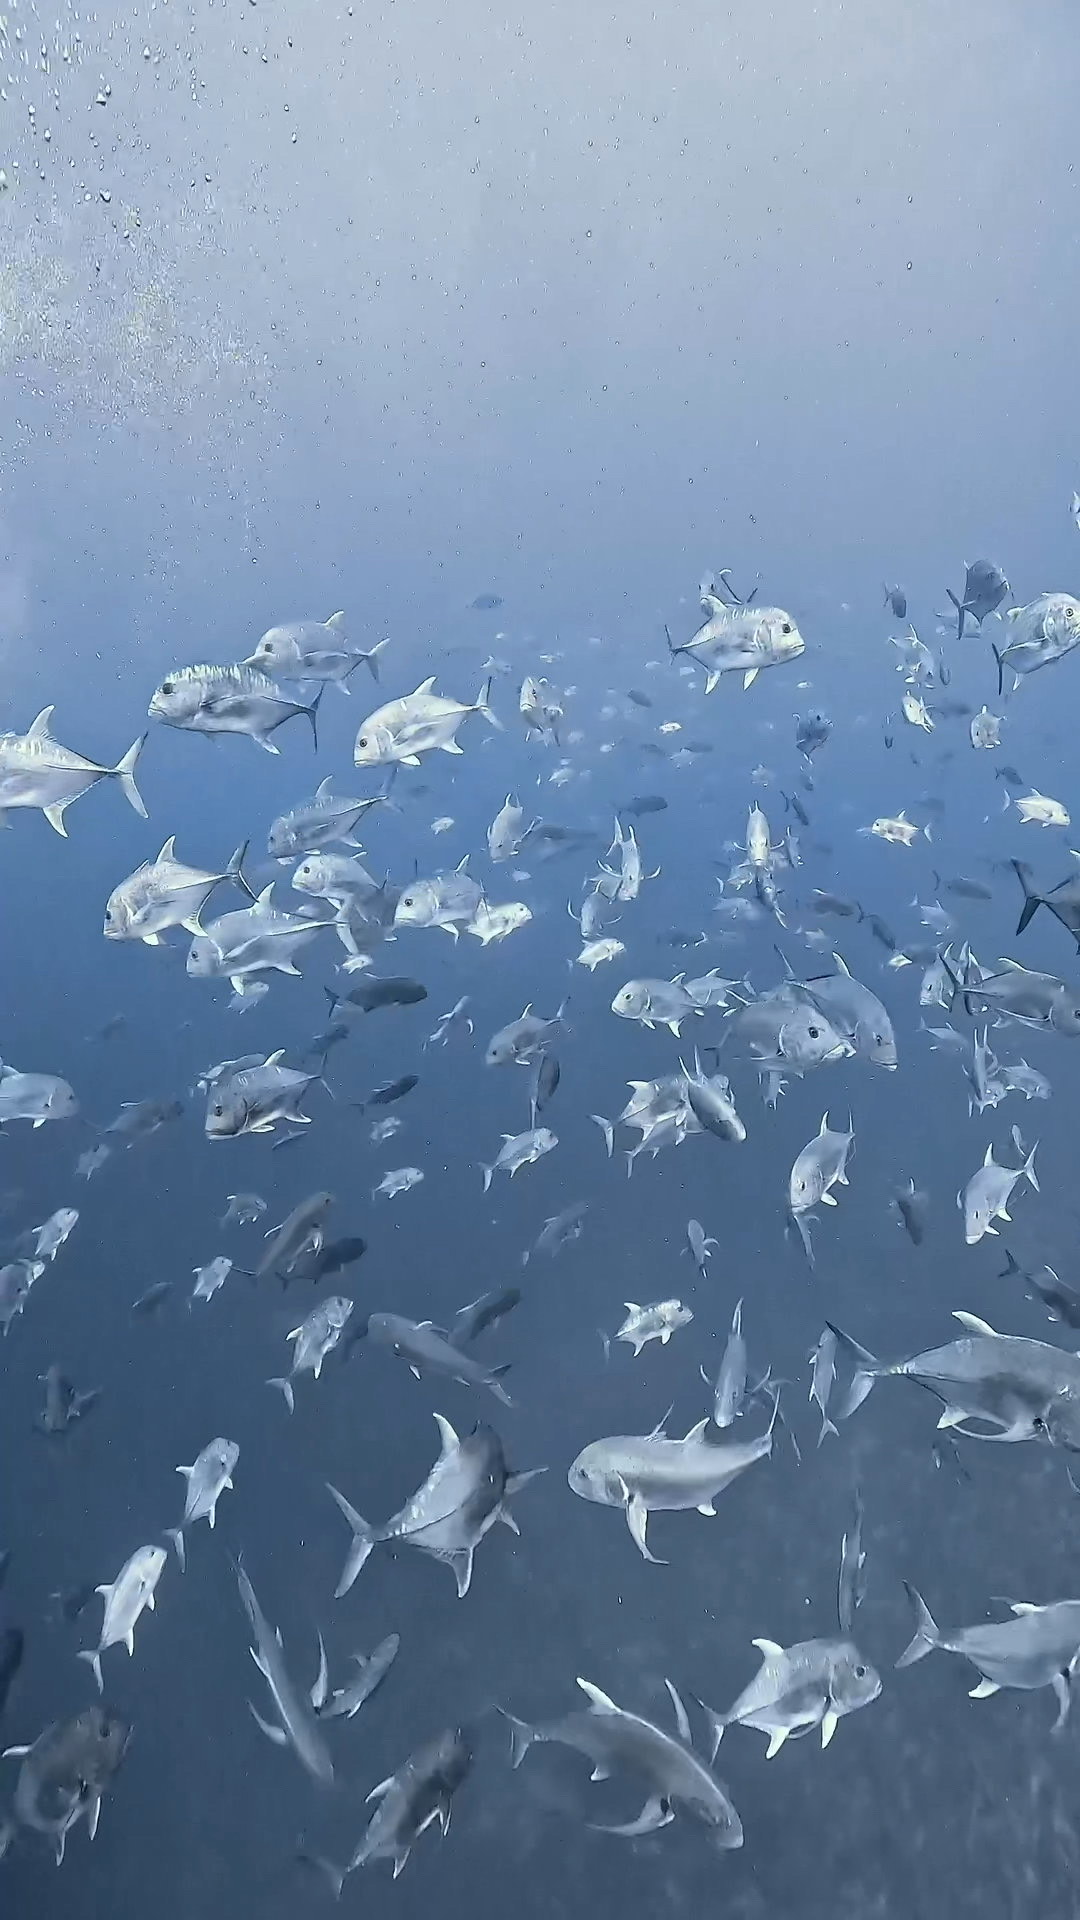 人喰いオオメジロザメ、ブルシャークの目の前までやってくる ペリリューコーナー ペリリューカット パラオ ペリリュー島のダイビングショップ｜OMZオムズ